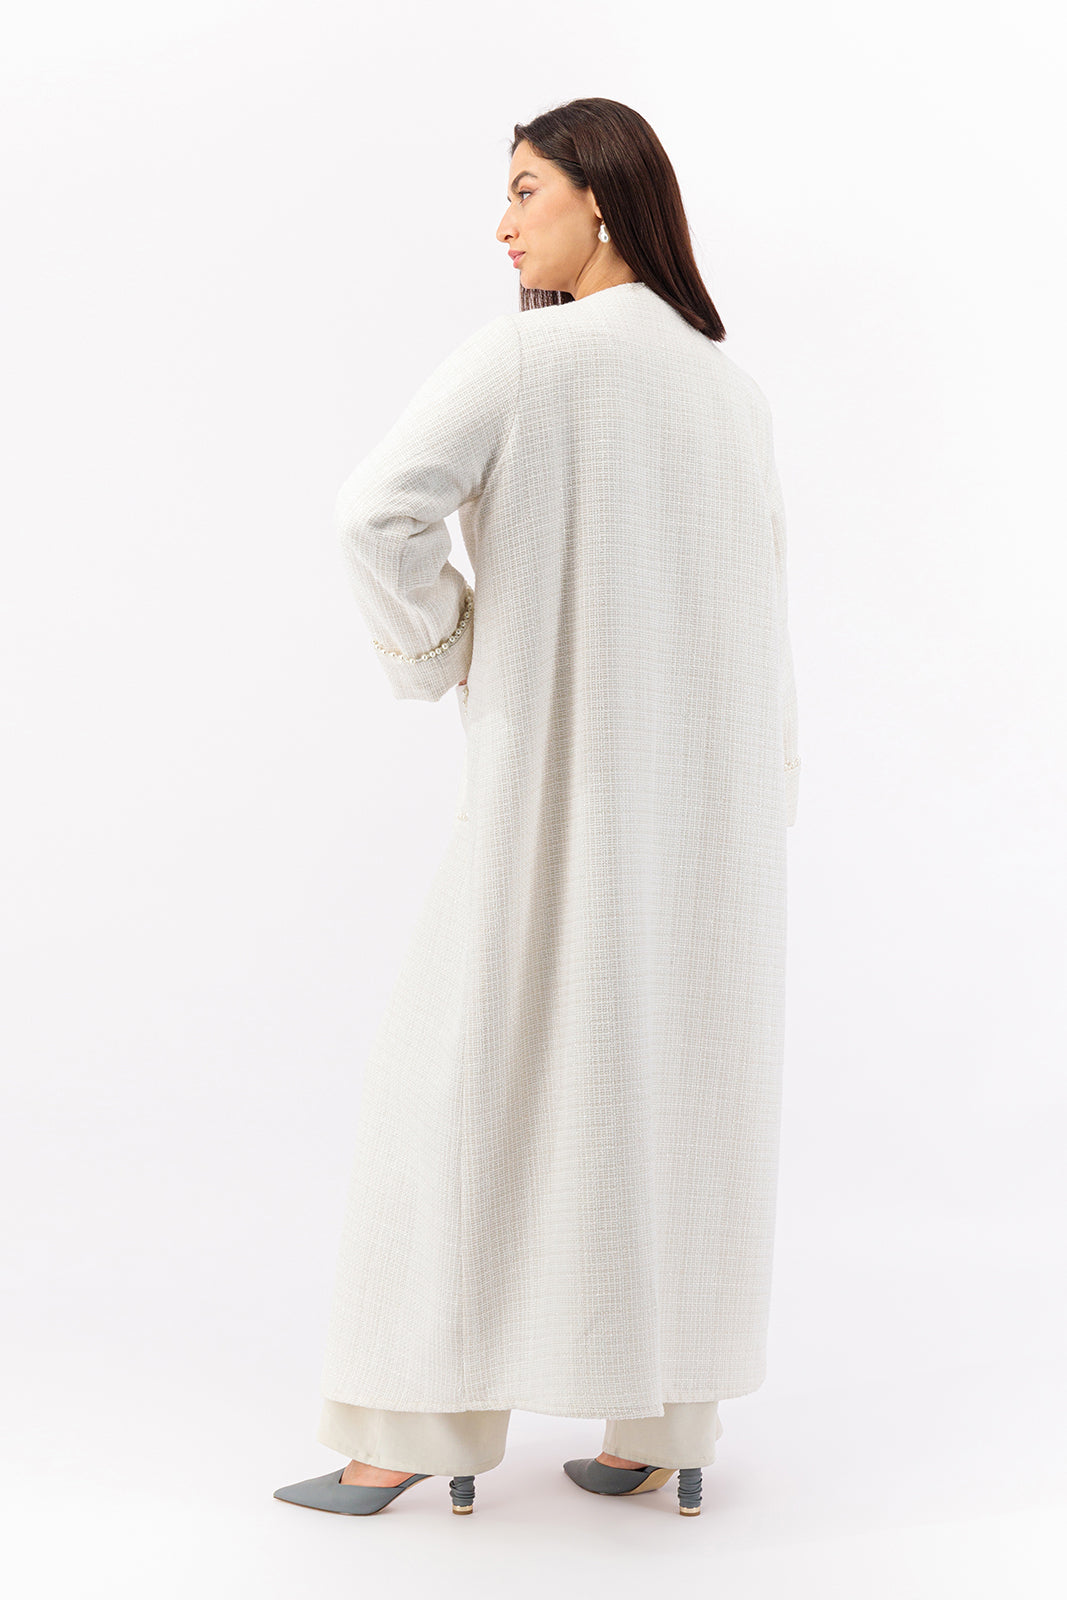 Timeless Tweed trench coat style abaya